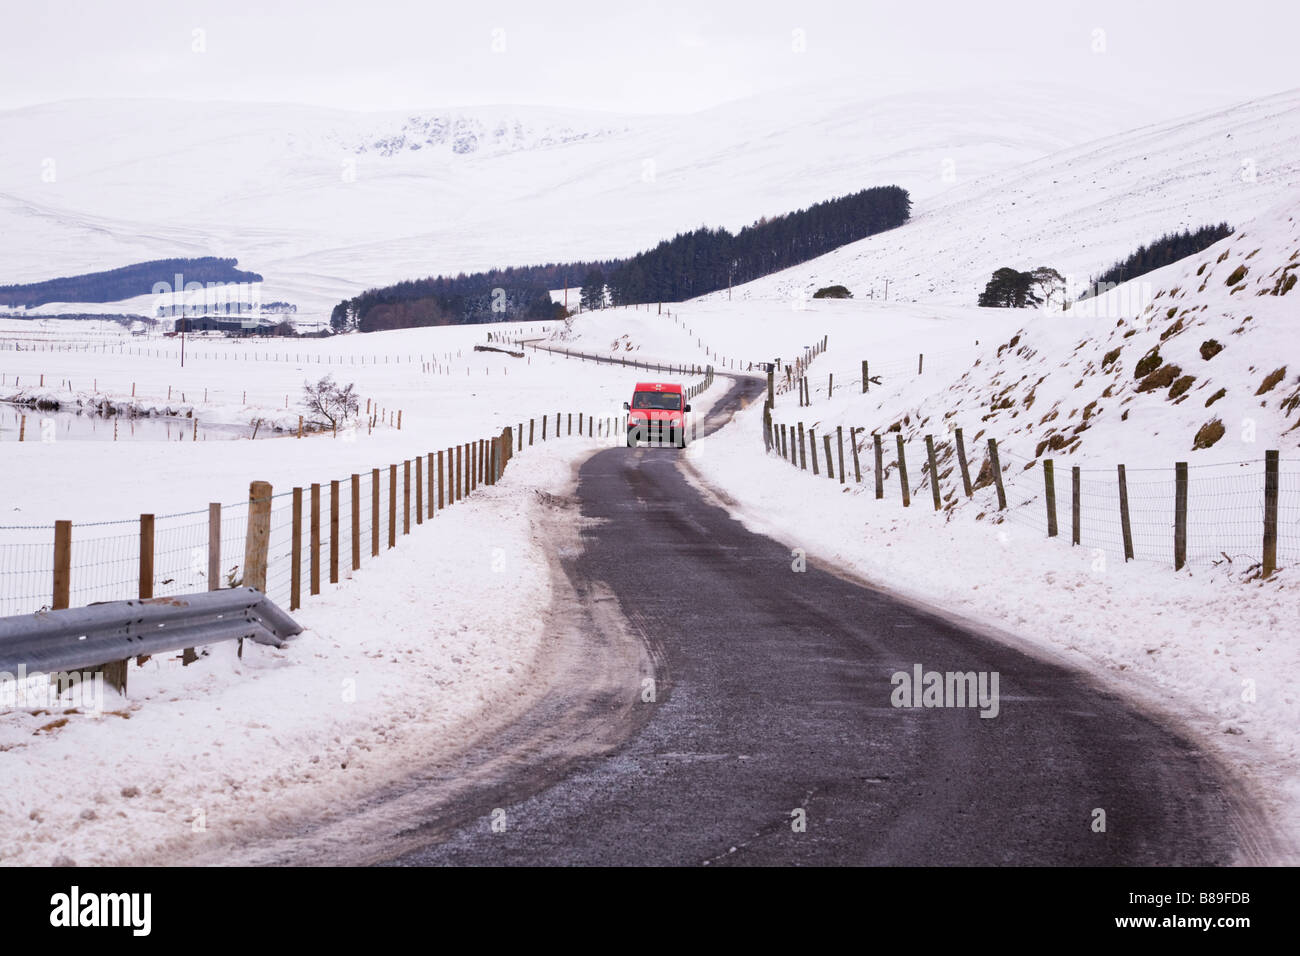 Livraison de Royal Mail à des endroits ruraux éloignés à Glen Clova, Angus, Écosse, sur une route de campagne enneigée. Banque D'Images